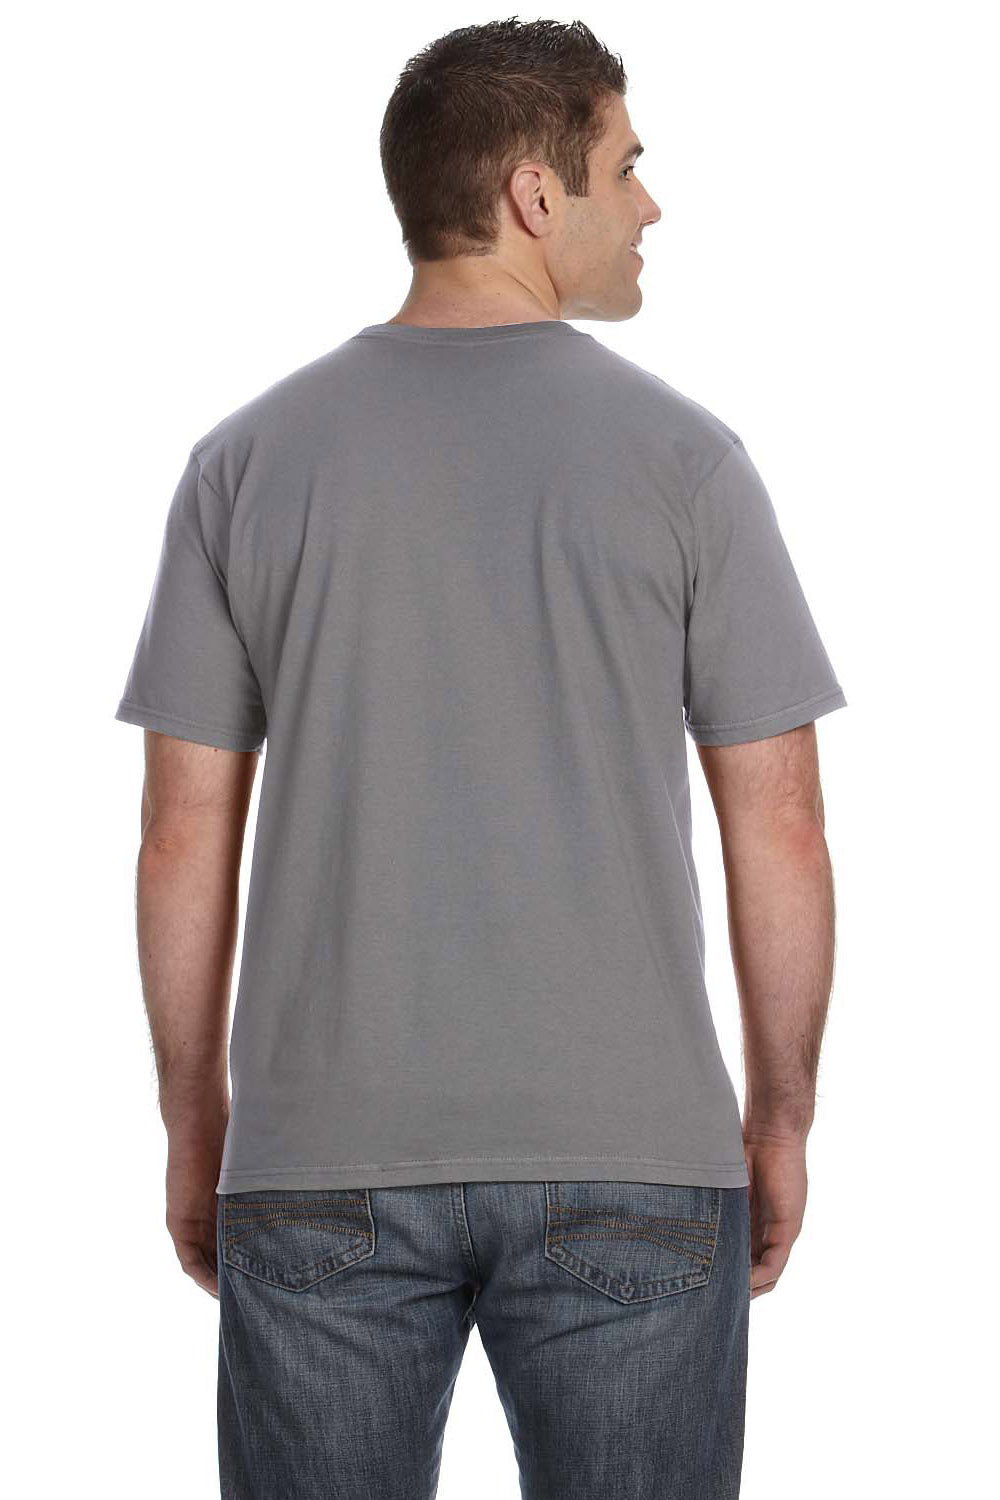 Anvil 980 Mens Short Sleeve Crewneck T-Shirt Storm Grey Back